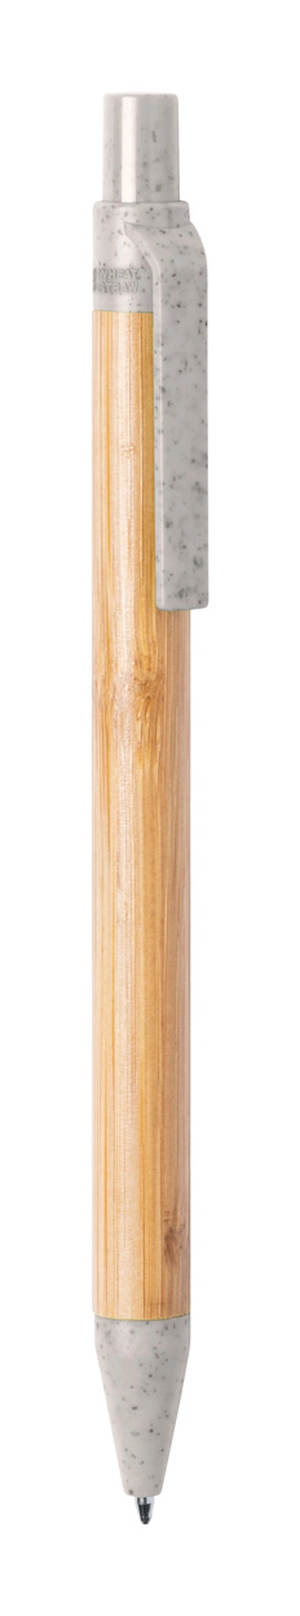 Stylo bille bambou avec attributs en paille de blé personnalisable